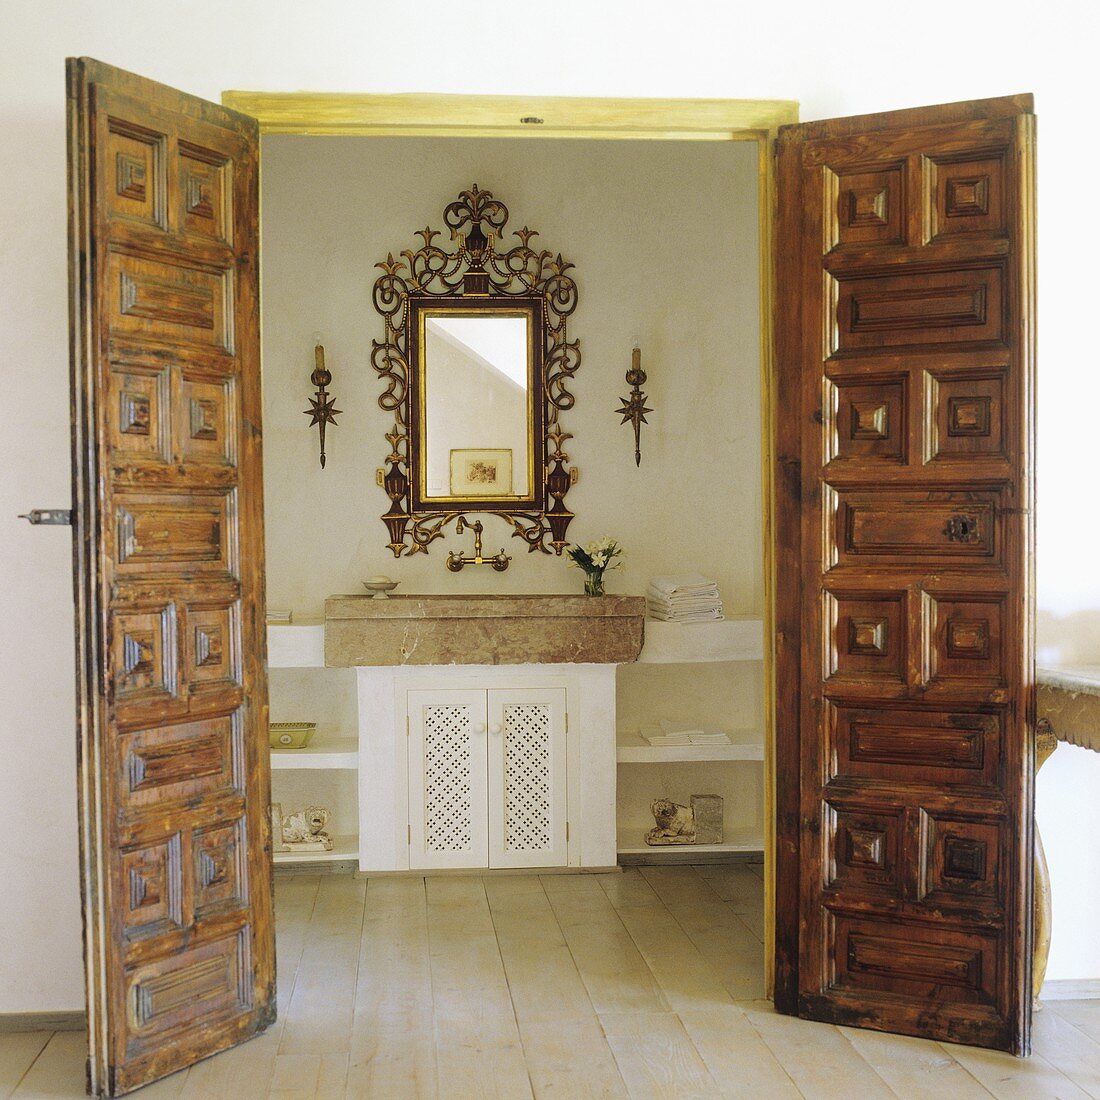 Offenstehende Holztüren mit Schnitzereien und Blick auf Steinbecken mit Spiegel im Goldrahmen